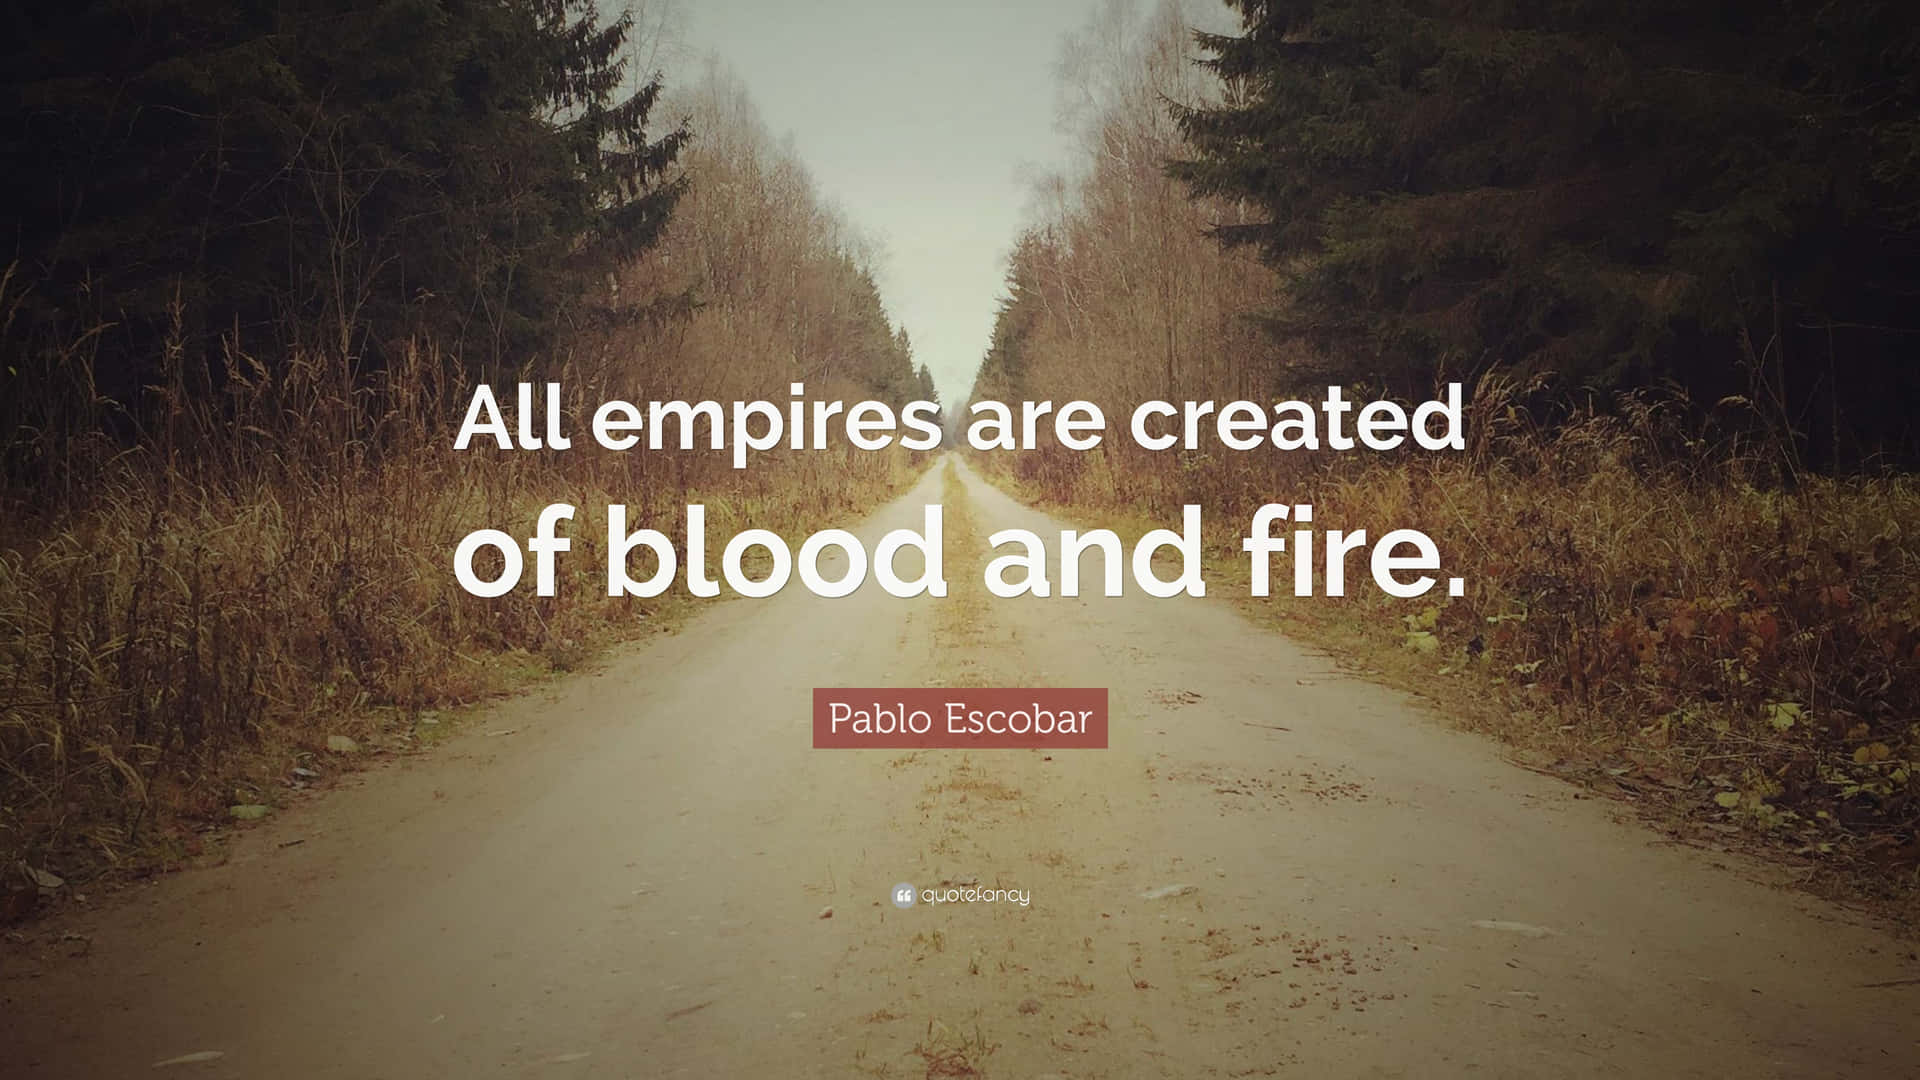 Tuttigli Imperi Sono Creati Di Sangue E Fuoco.